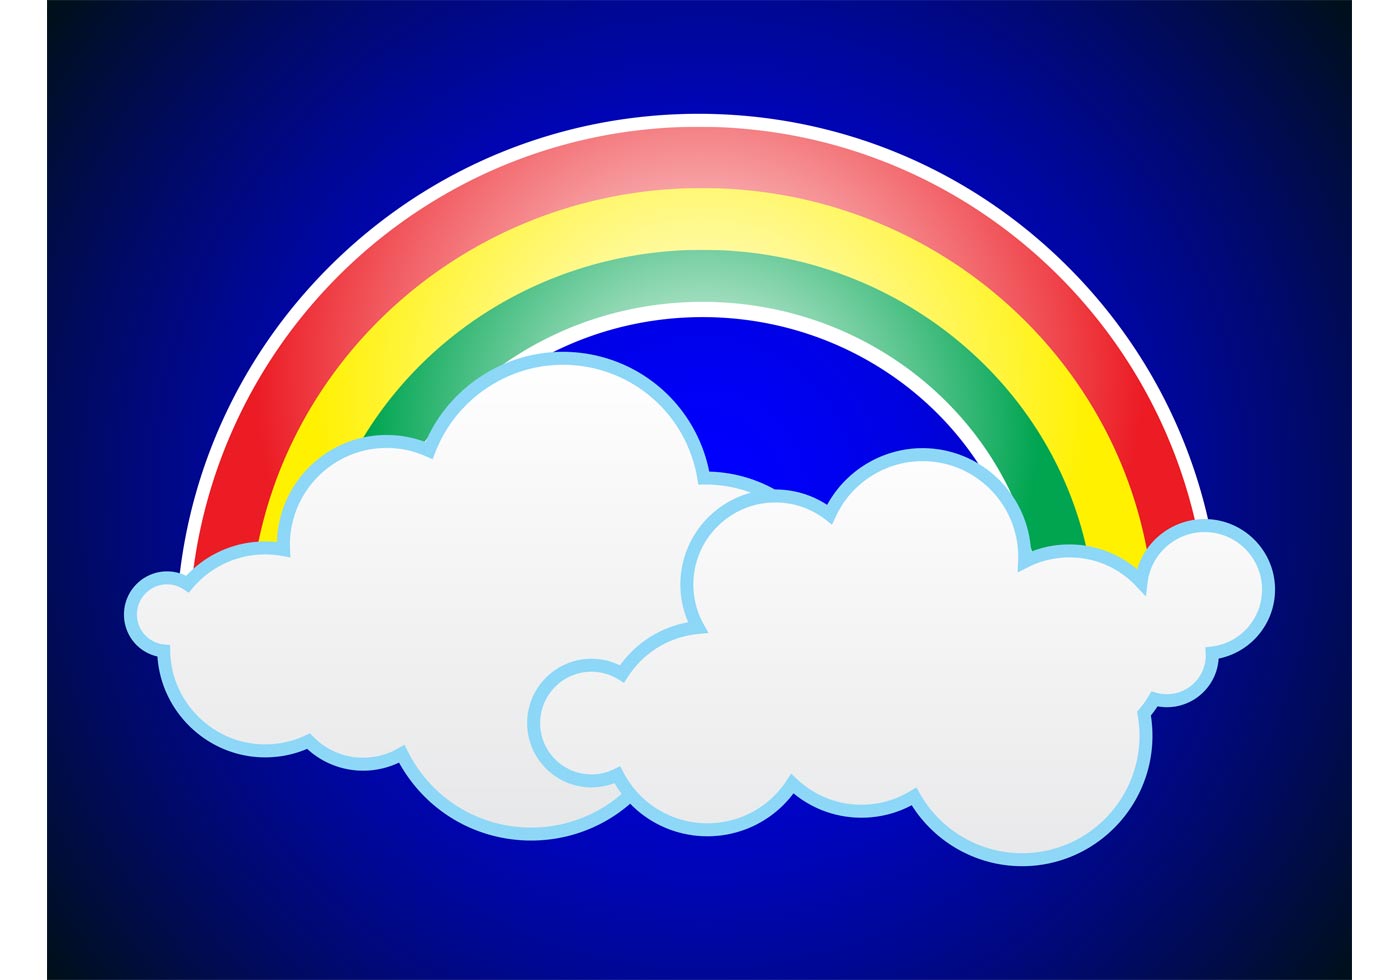 Download Rainbow Graphics - Download Free Vector Art, Stock ...